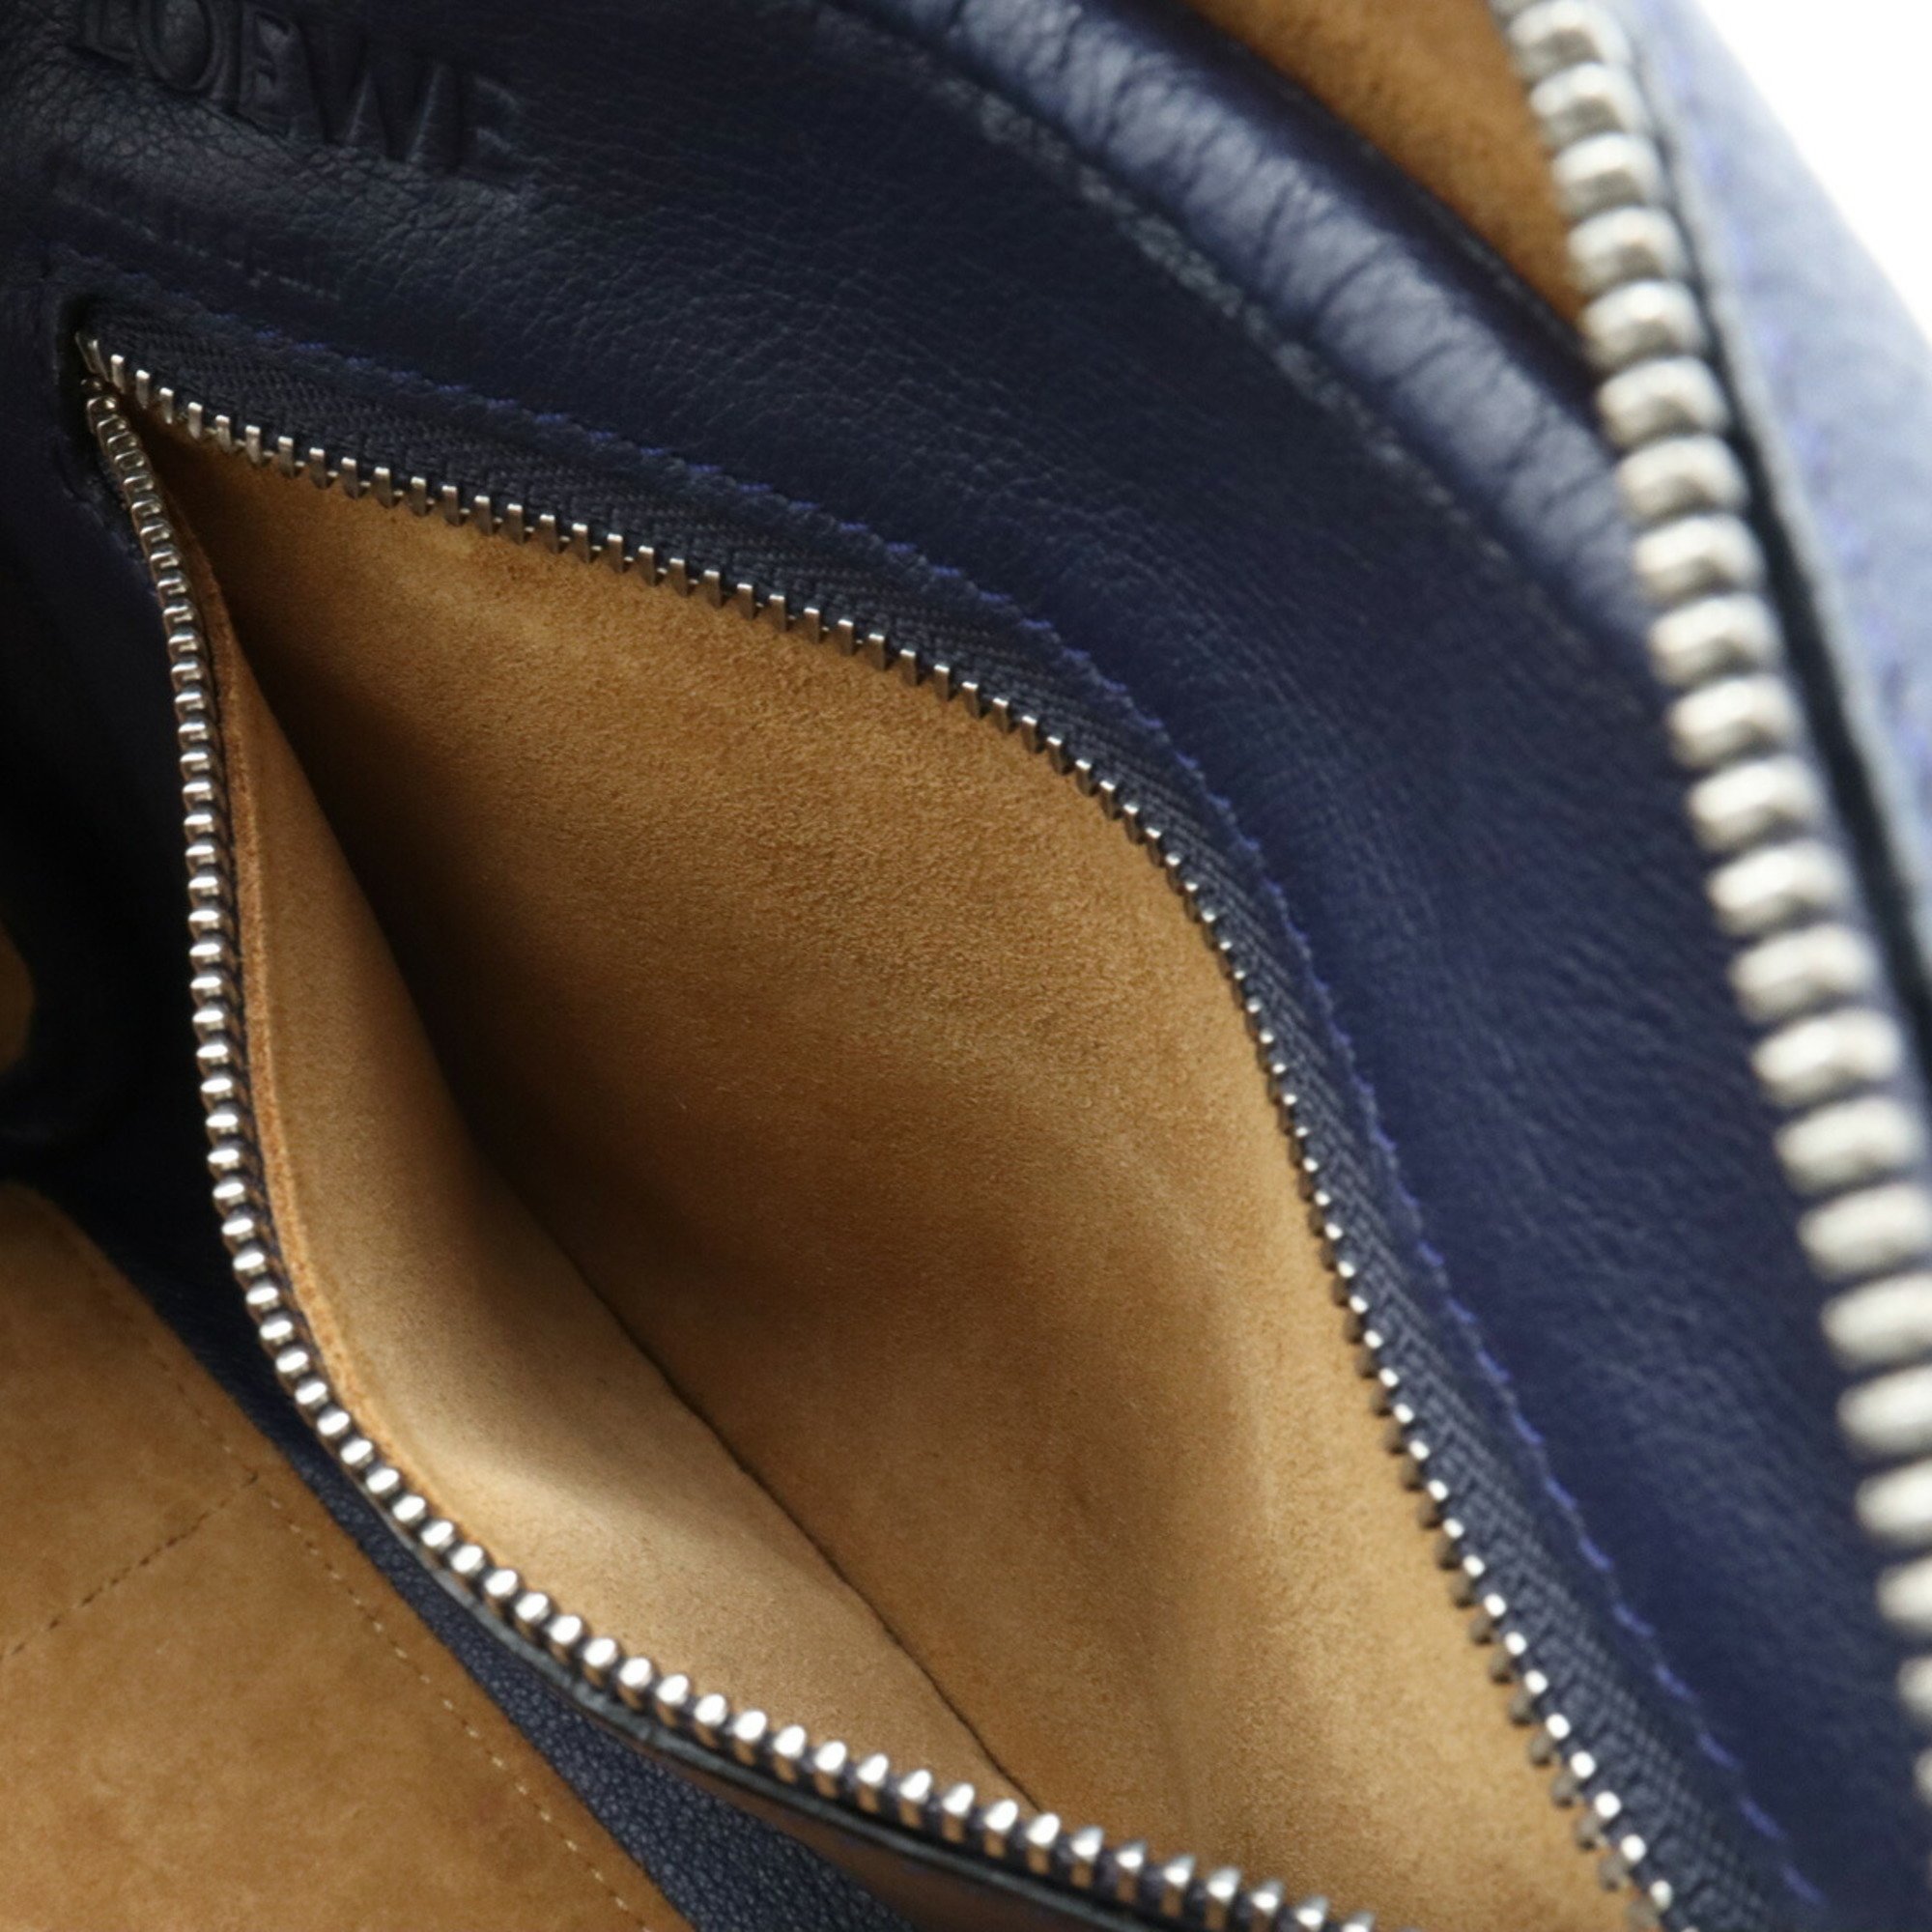 LOEWE Amazona 75 Small Anagram Handbag Bag Shoulder Leather Navy